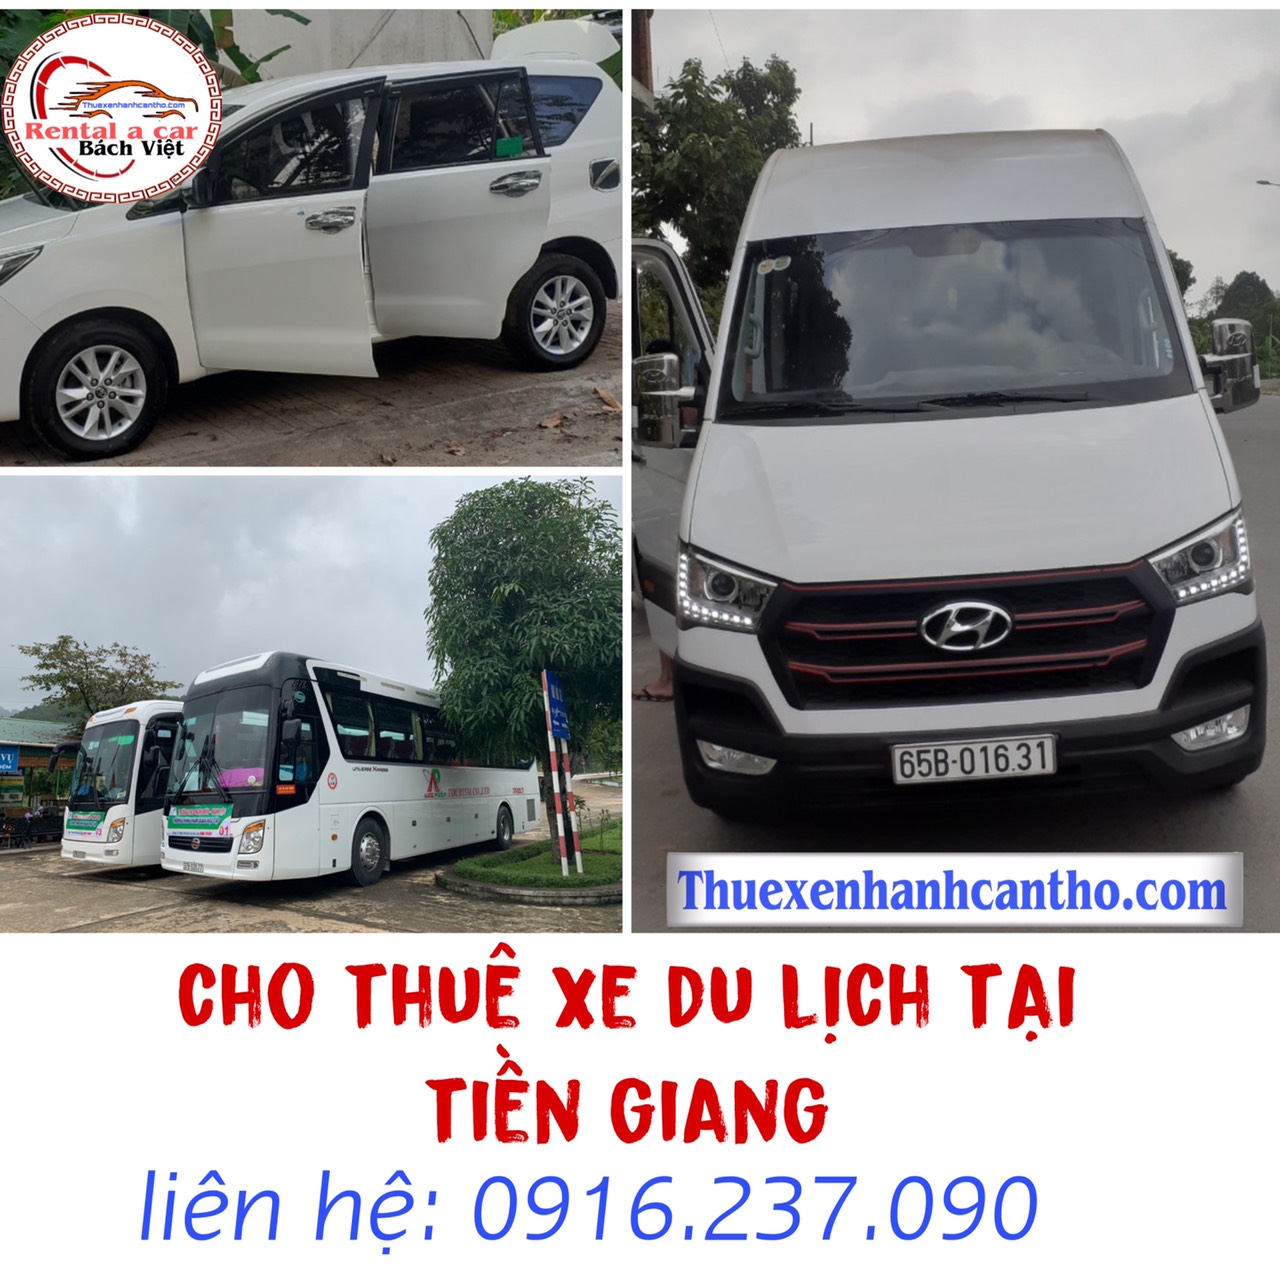 Cho thuê xe du lịch tại Tiền Giang